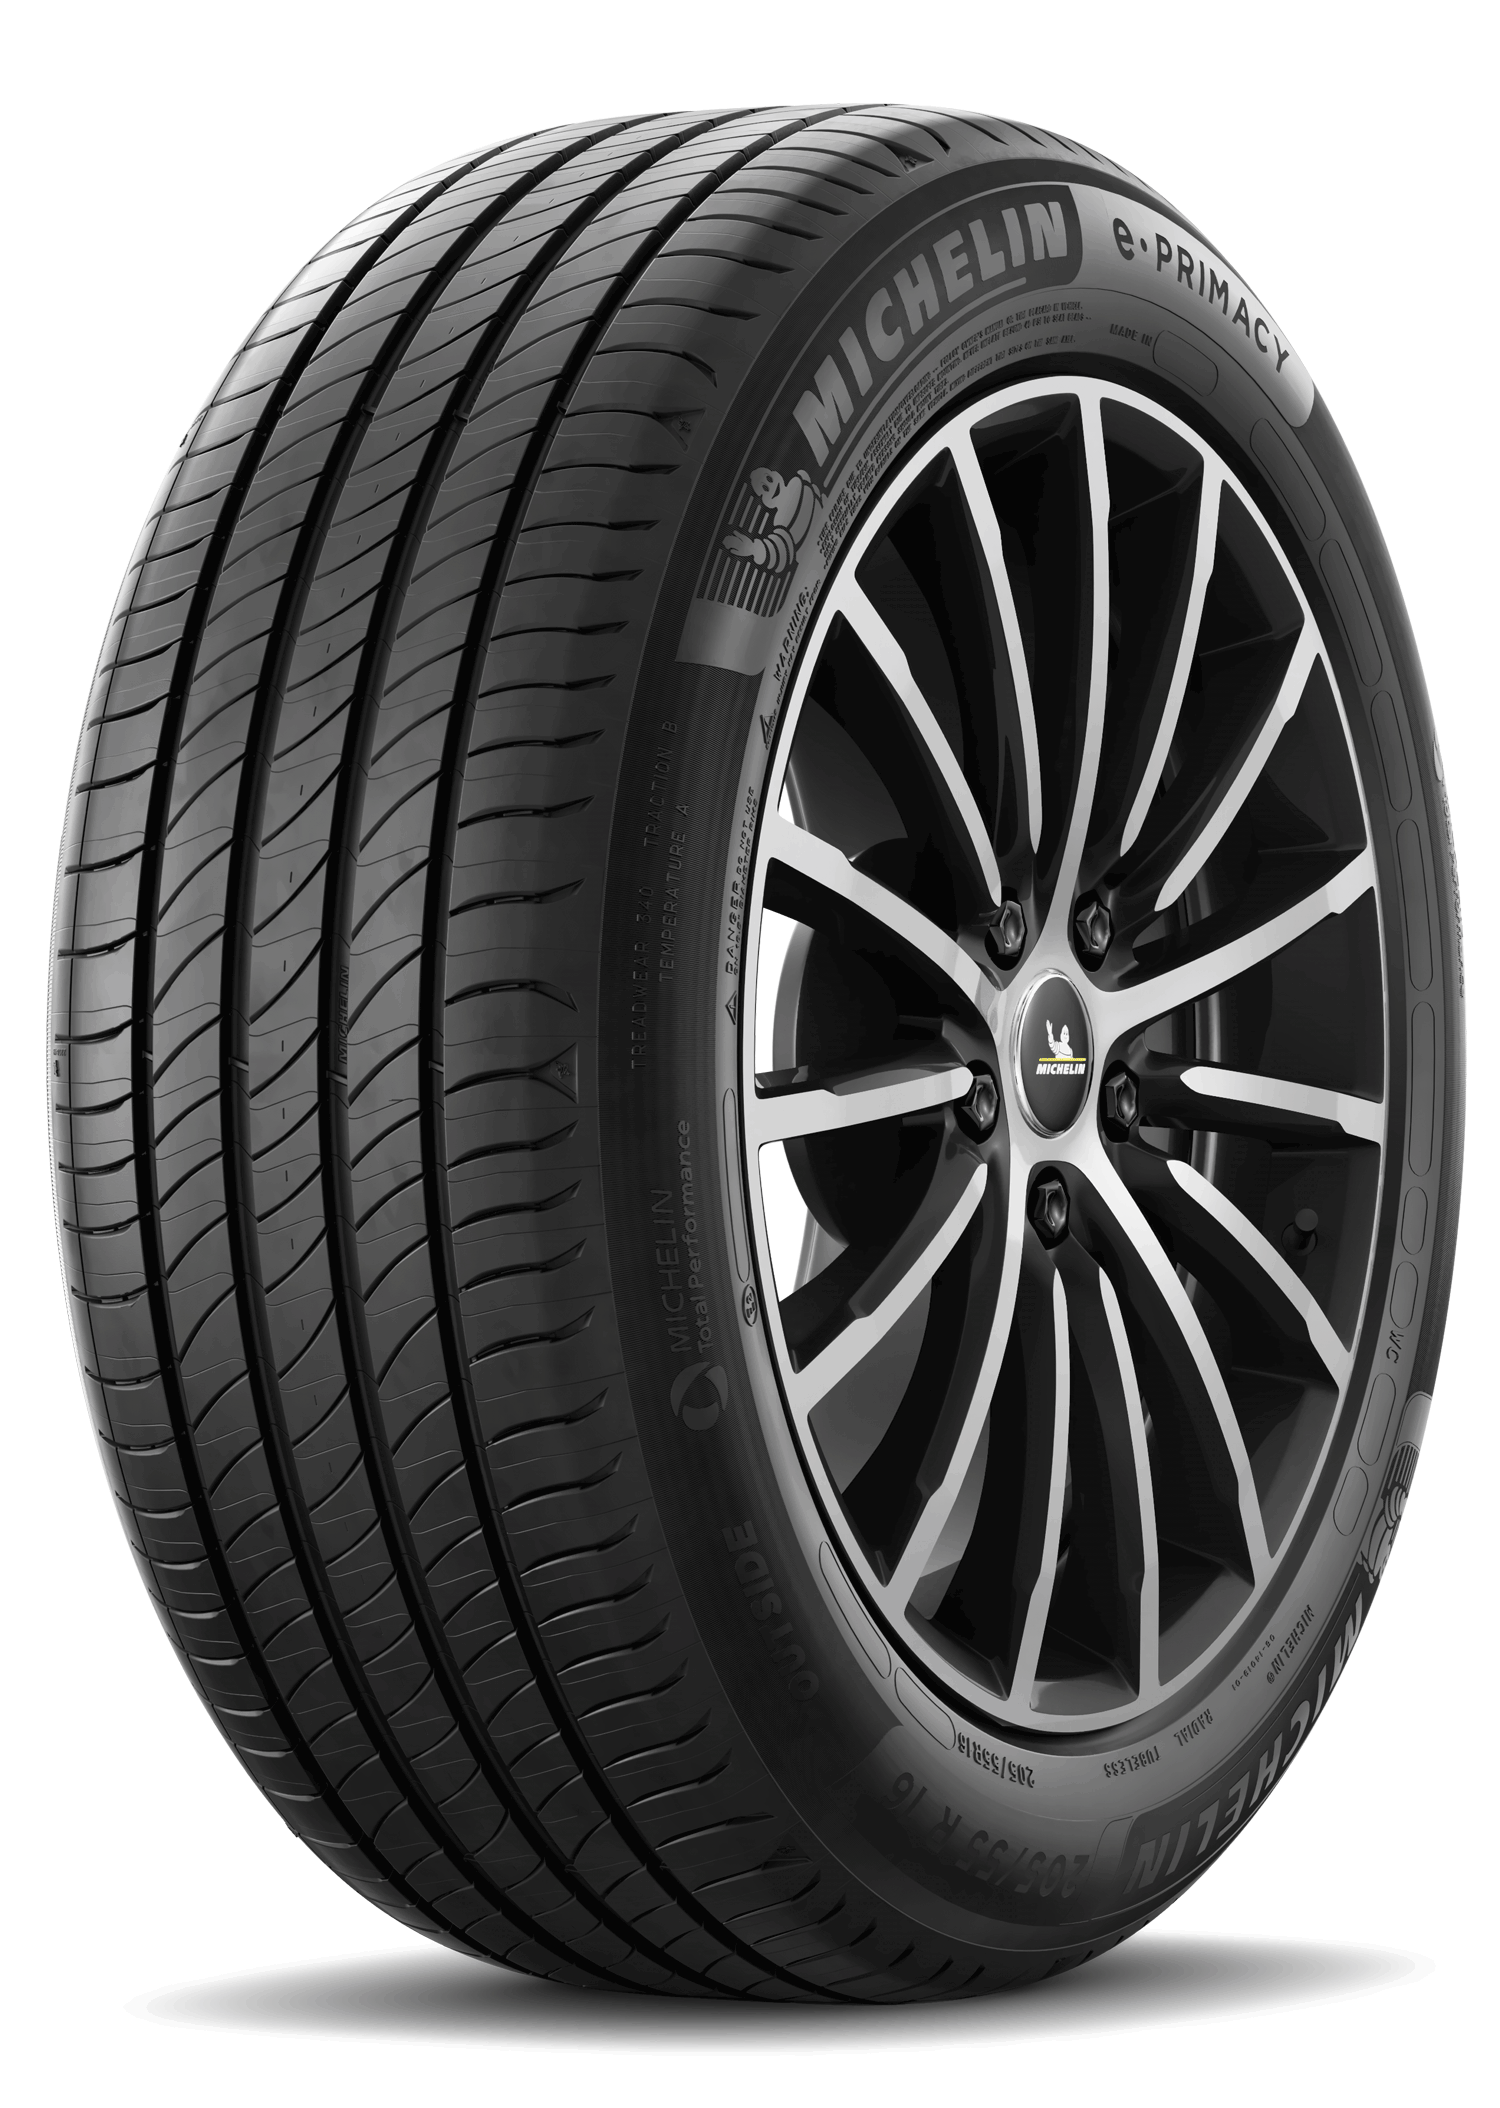 Gomme Nuove Michelin 195/55 R16 91H E PRIMACY XL pneumatici nuovi Estivo